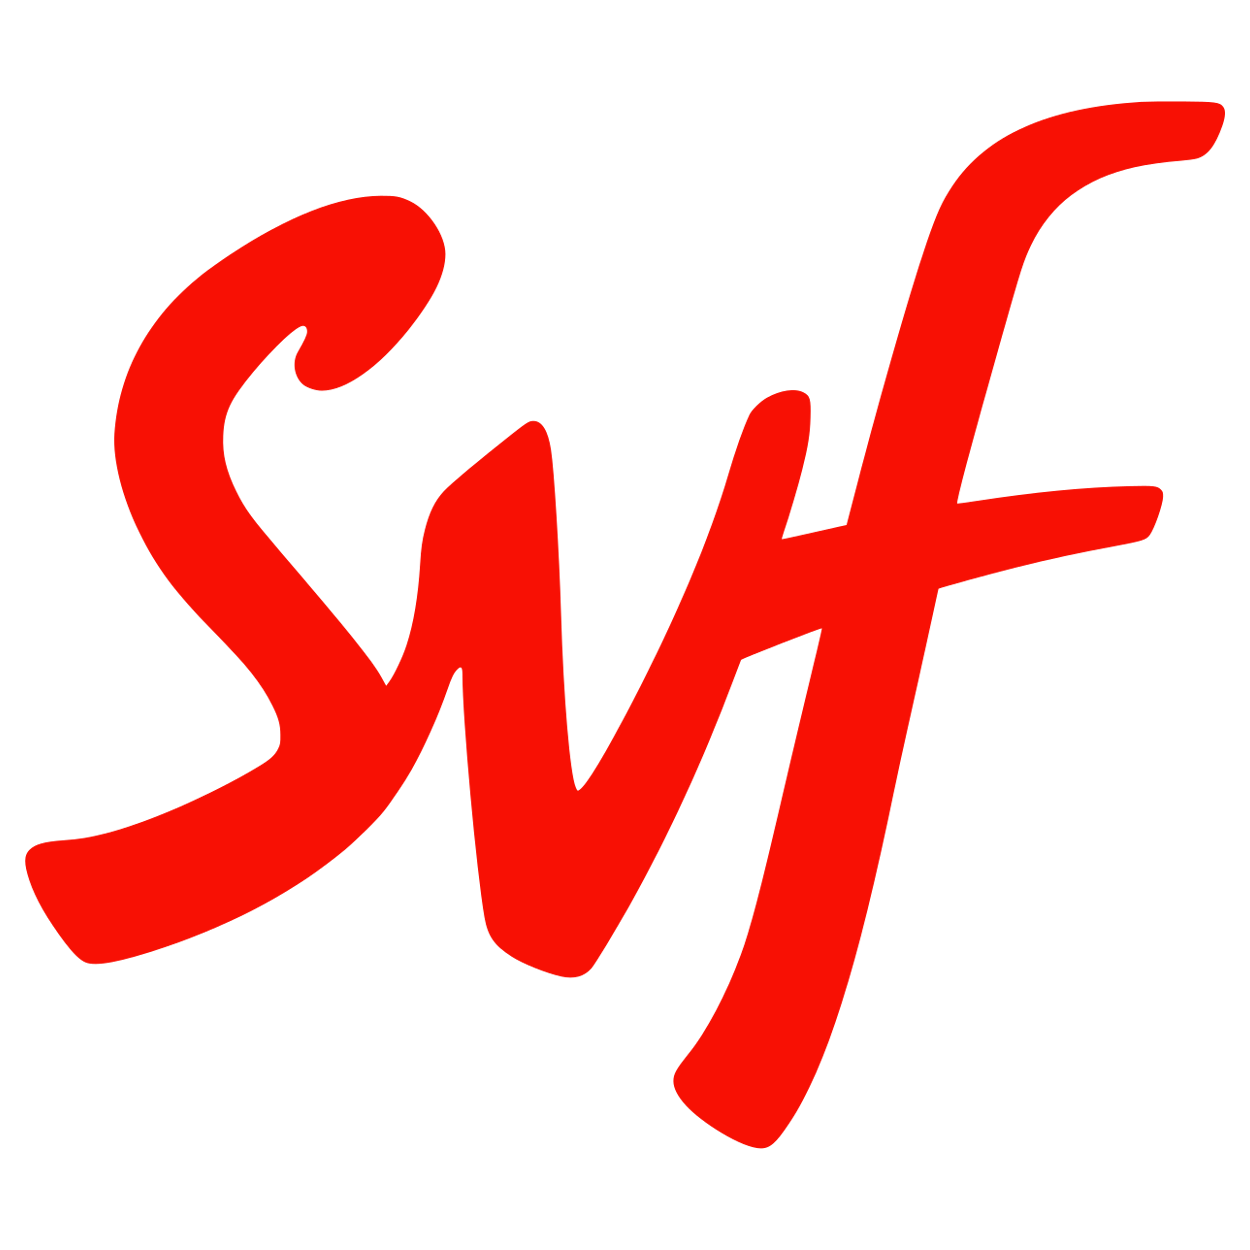 SVF Logo Transparent Image